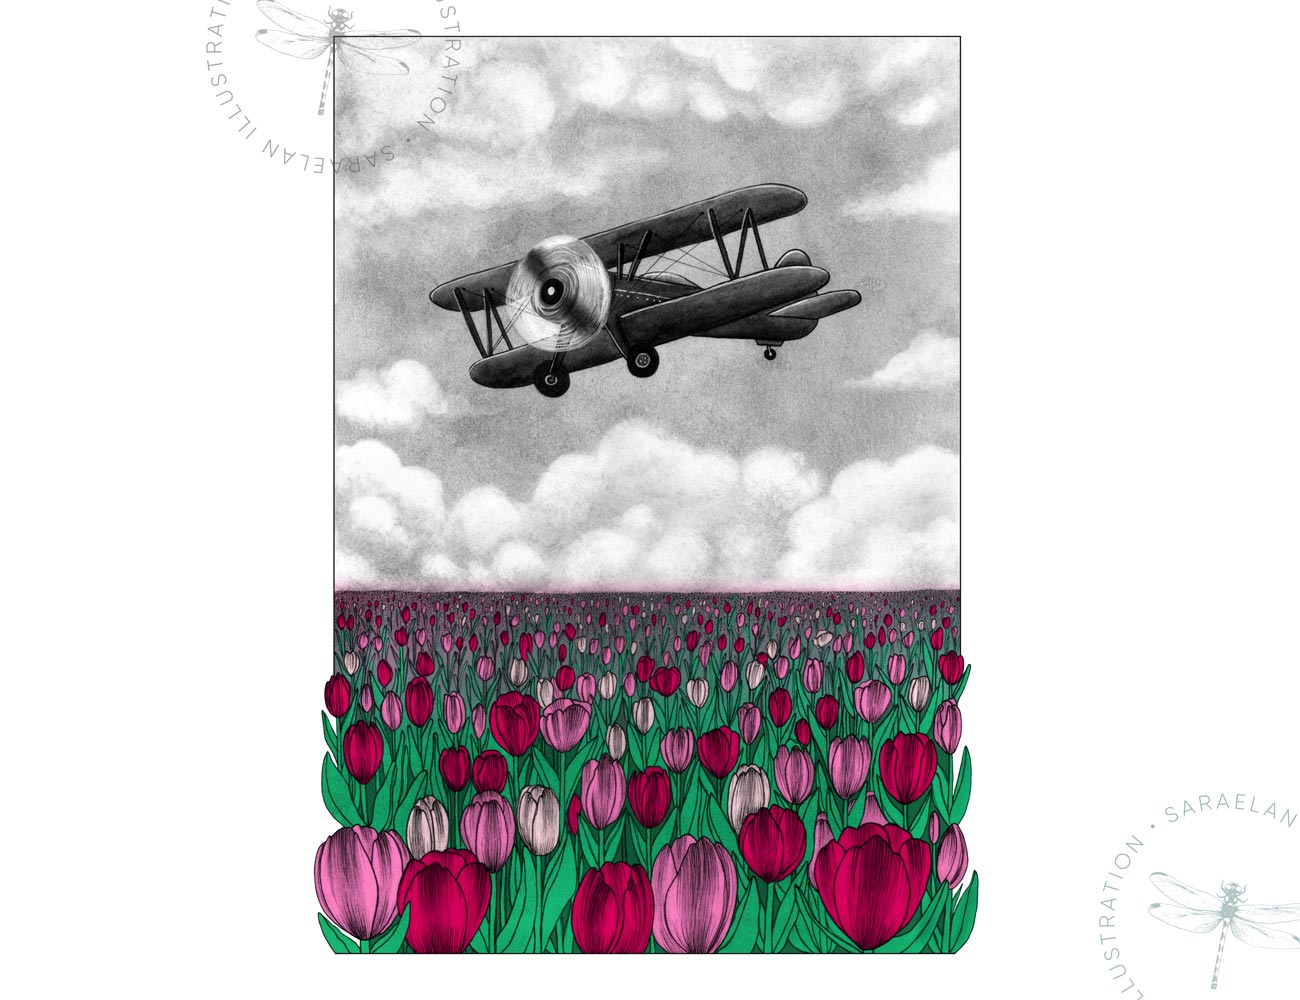 Deus ex Machina illustrazioni di paesaggi e mezzi di trasporto del 1900 a colori - aeroplano monoposto su campo di papaveri rosa